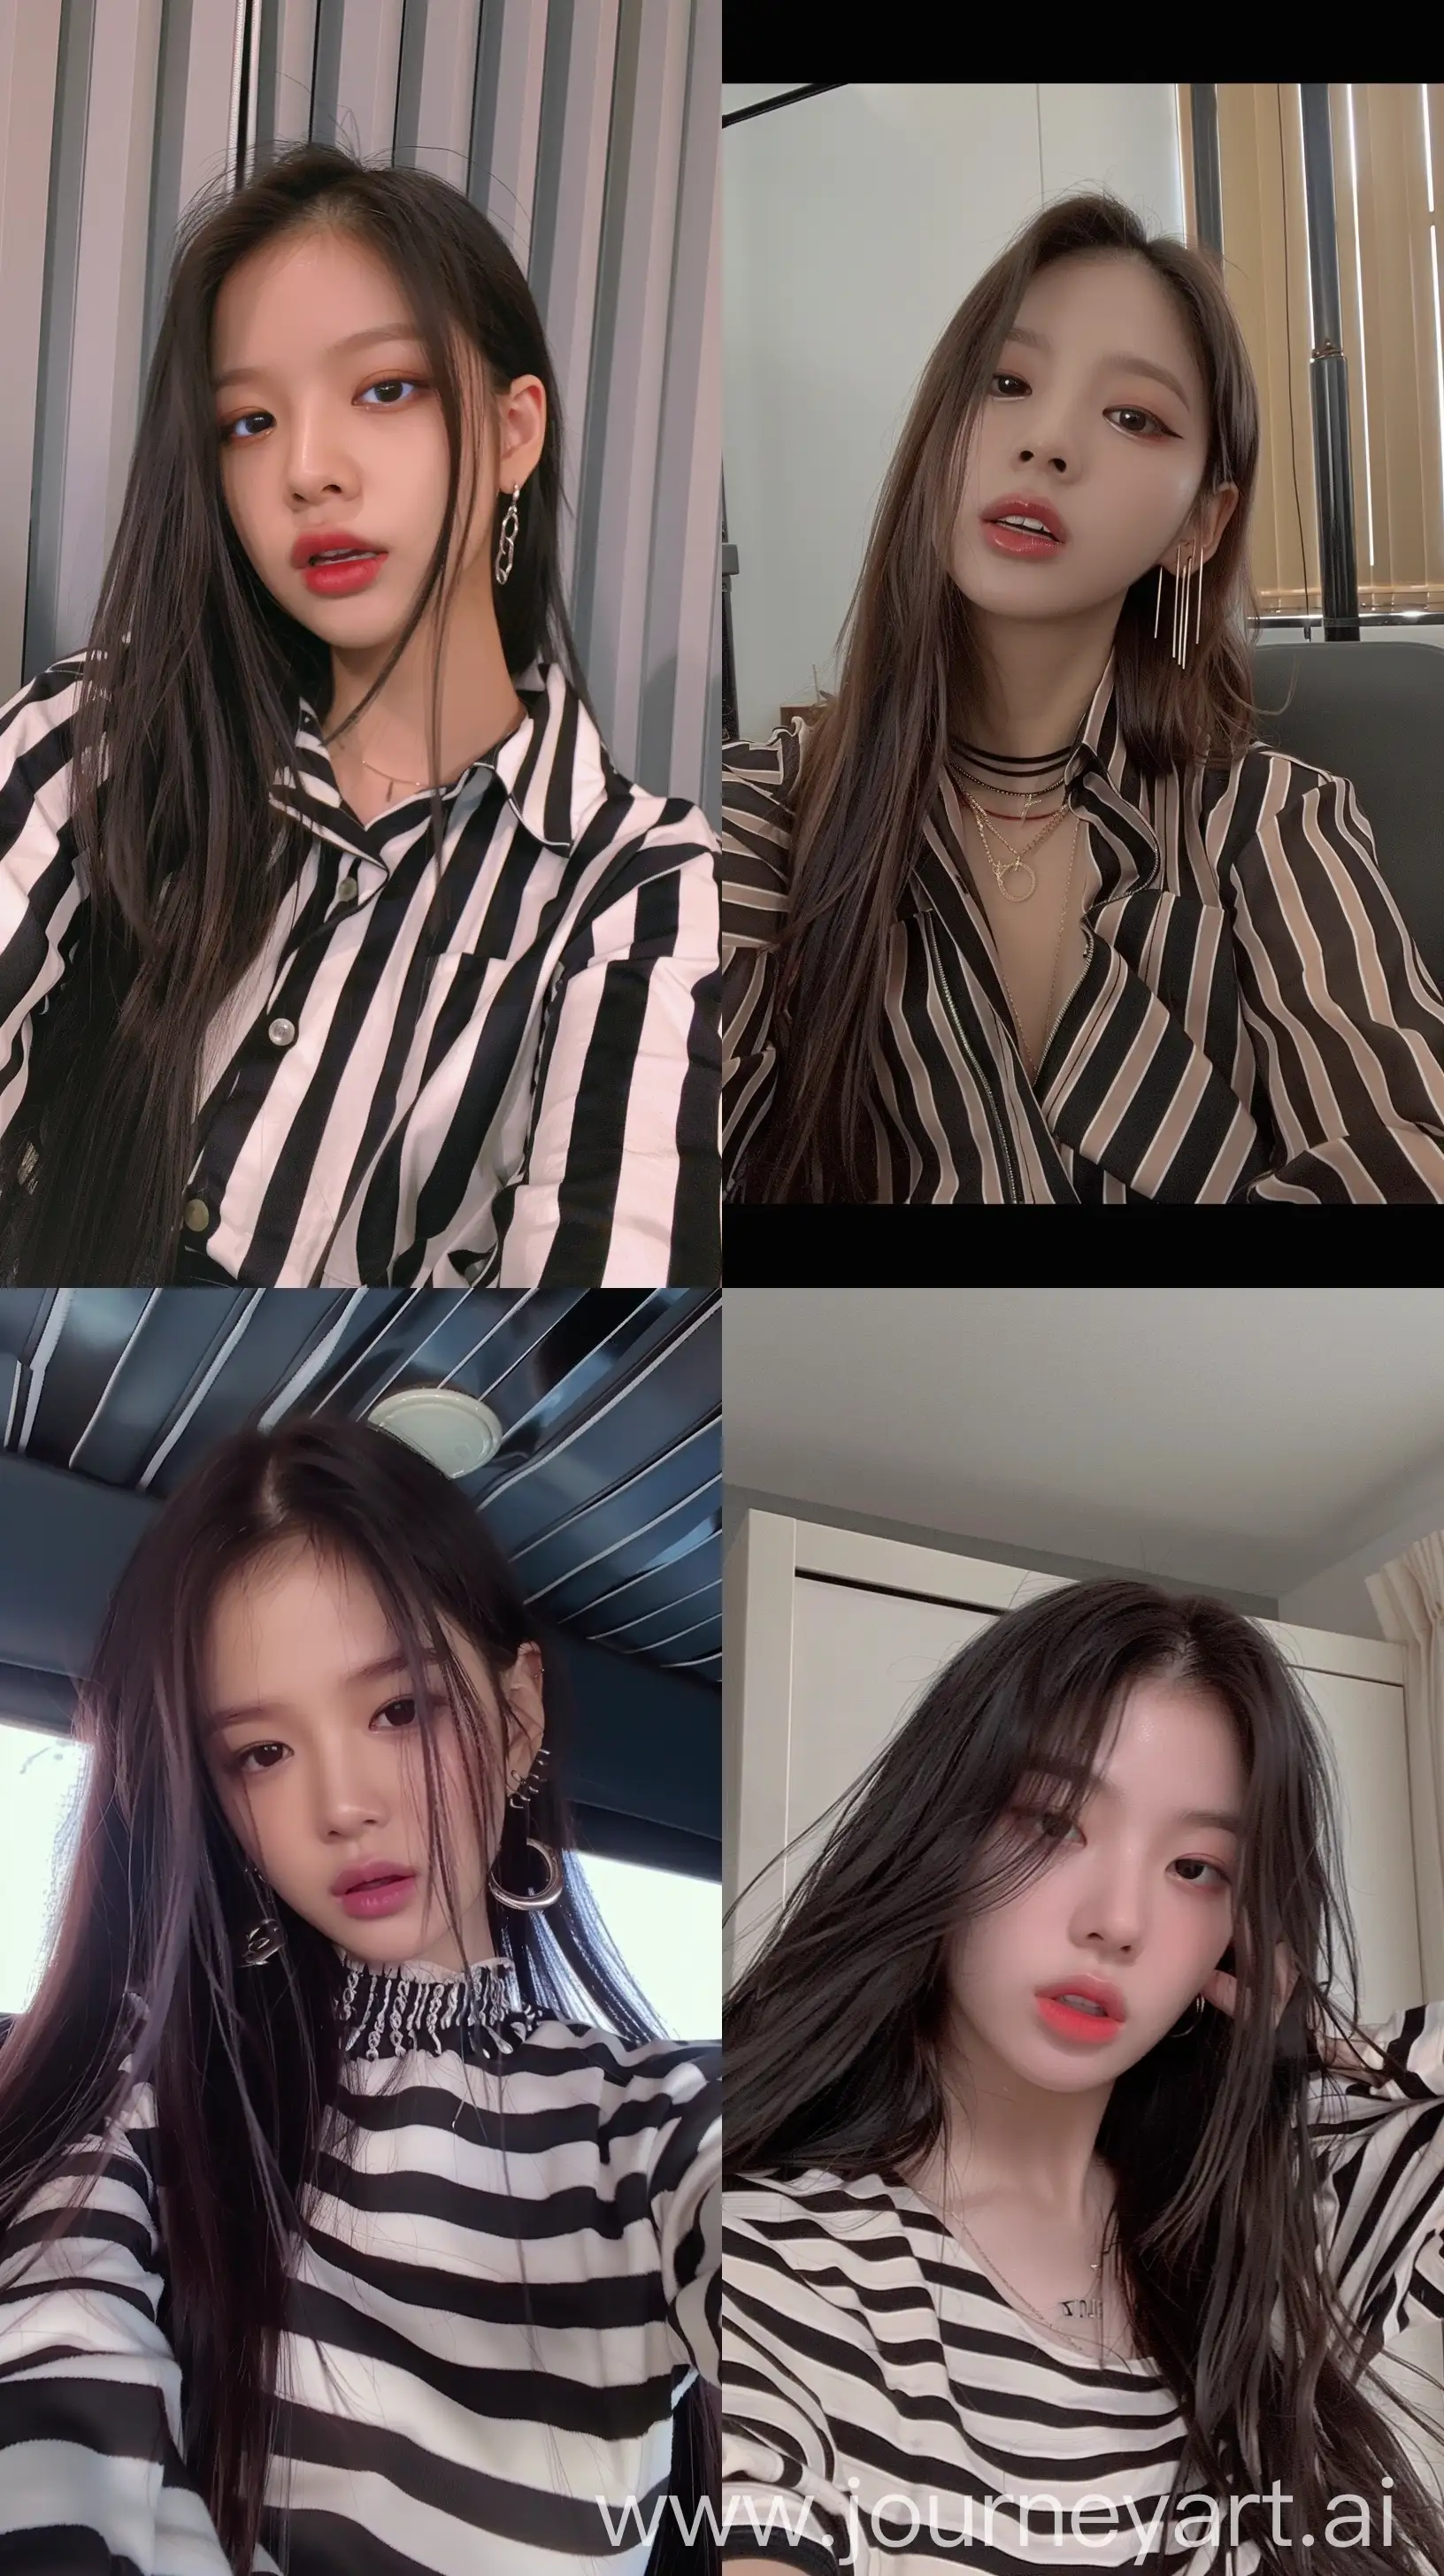 Blackpinks-Jennie-Stylish-Instagram-Selfie-in-Striped-Shirt